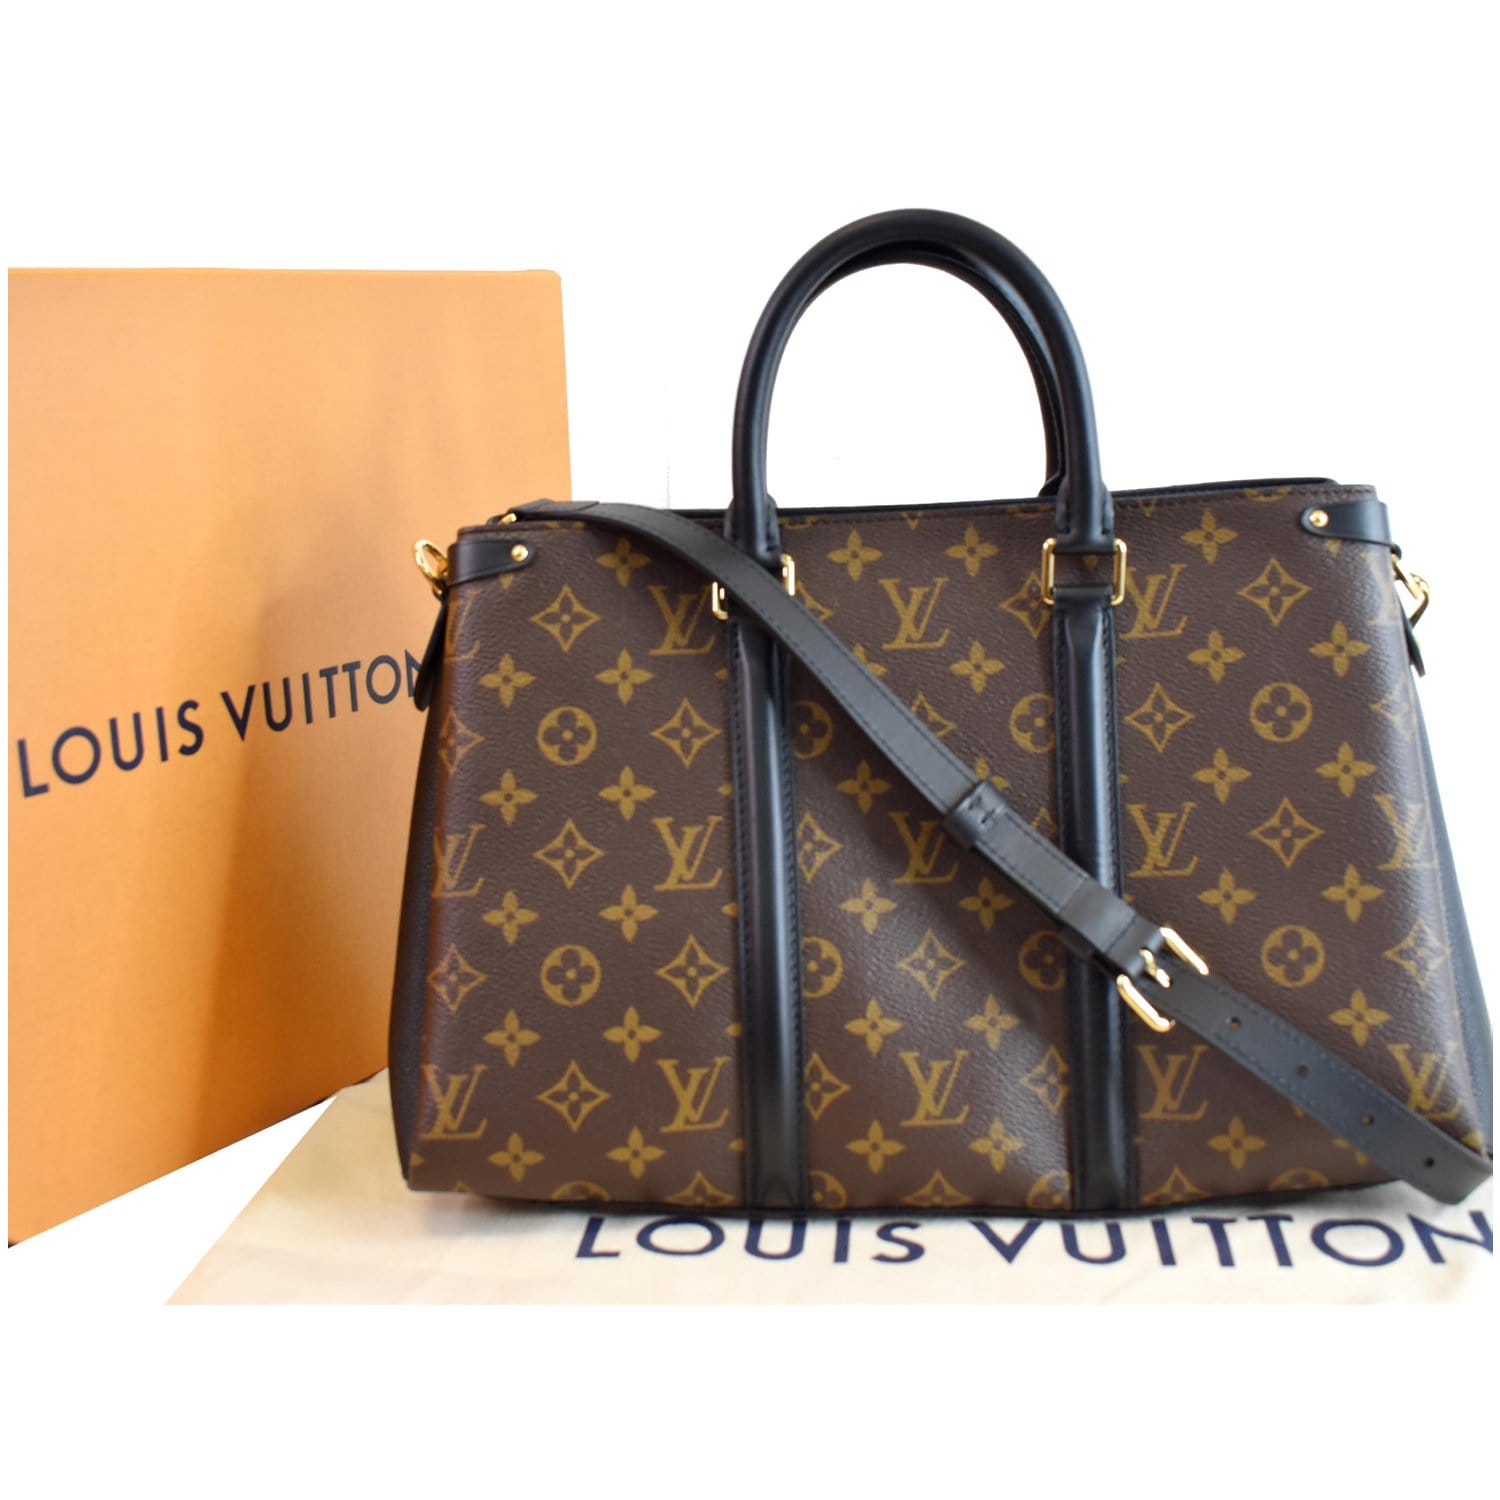 Louis Vuitton Soufflot MM 2019 Good condition Complete set Idr 25,500,000